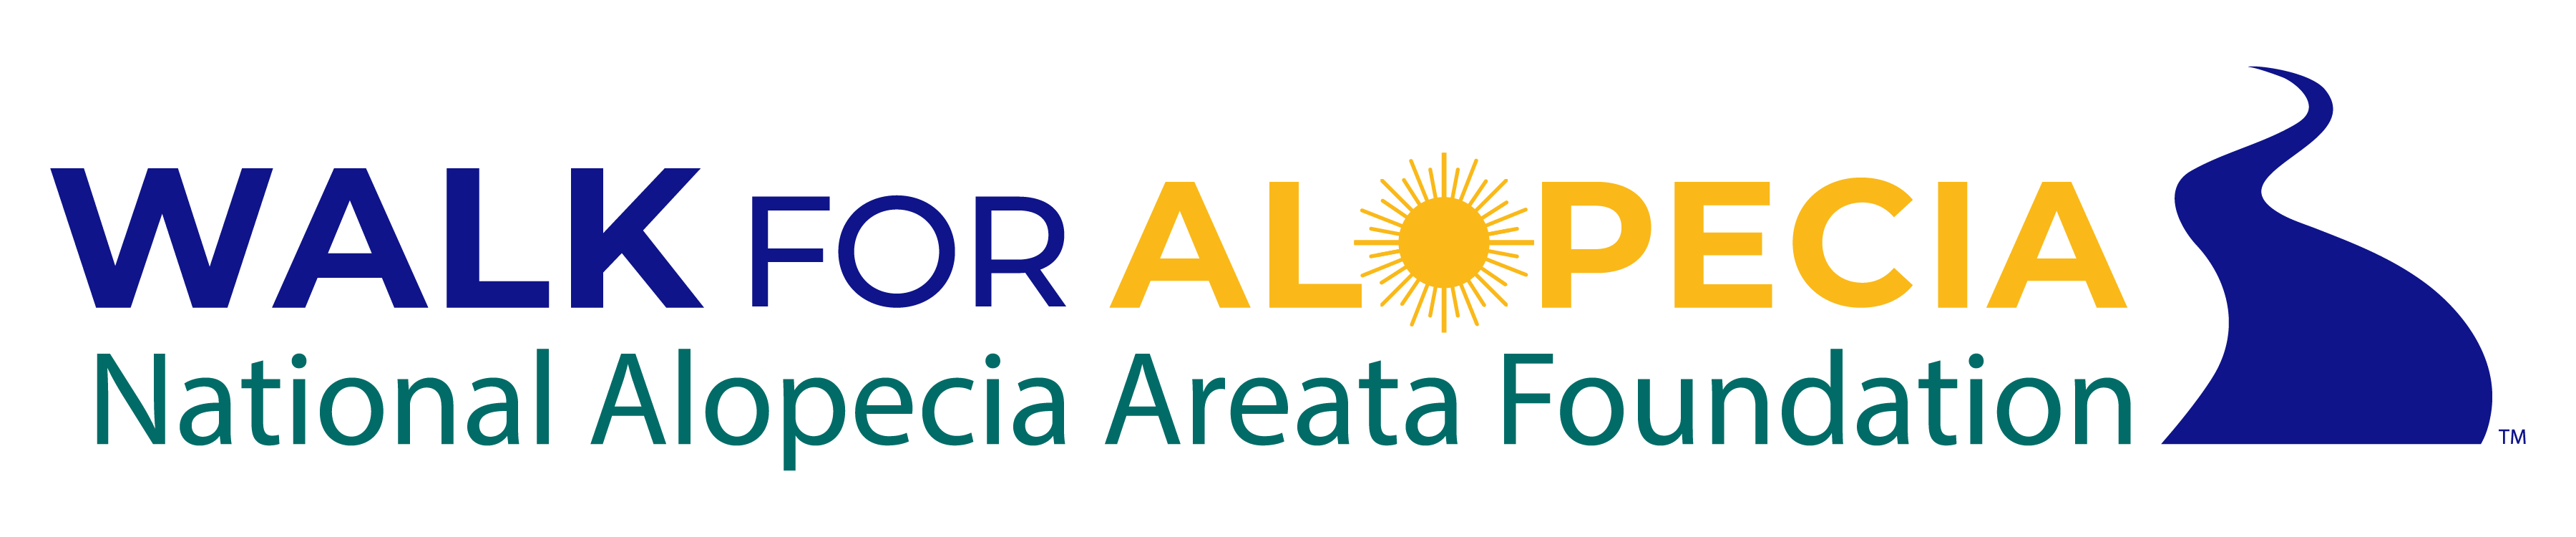 walk for alopecia; national alopecia areata foundation (NAAF)